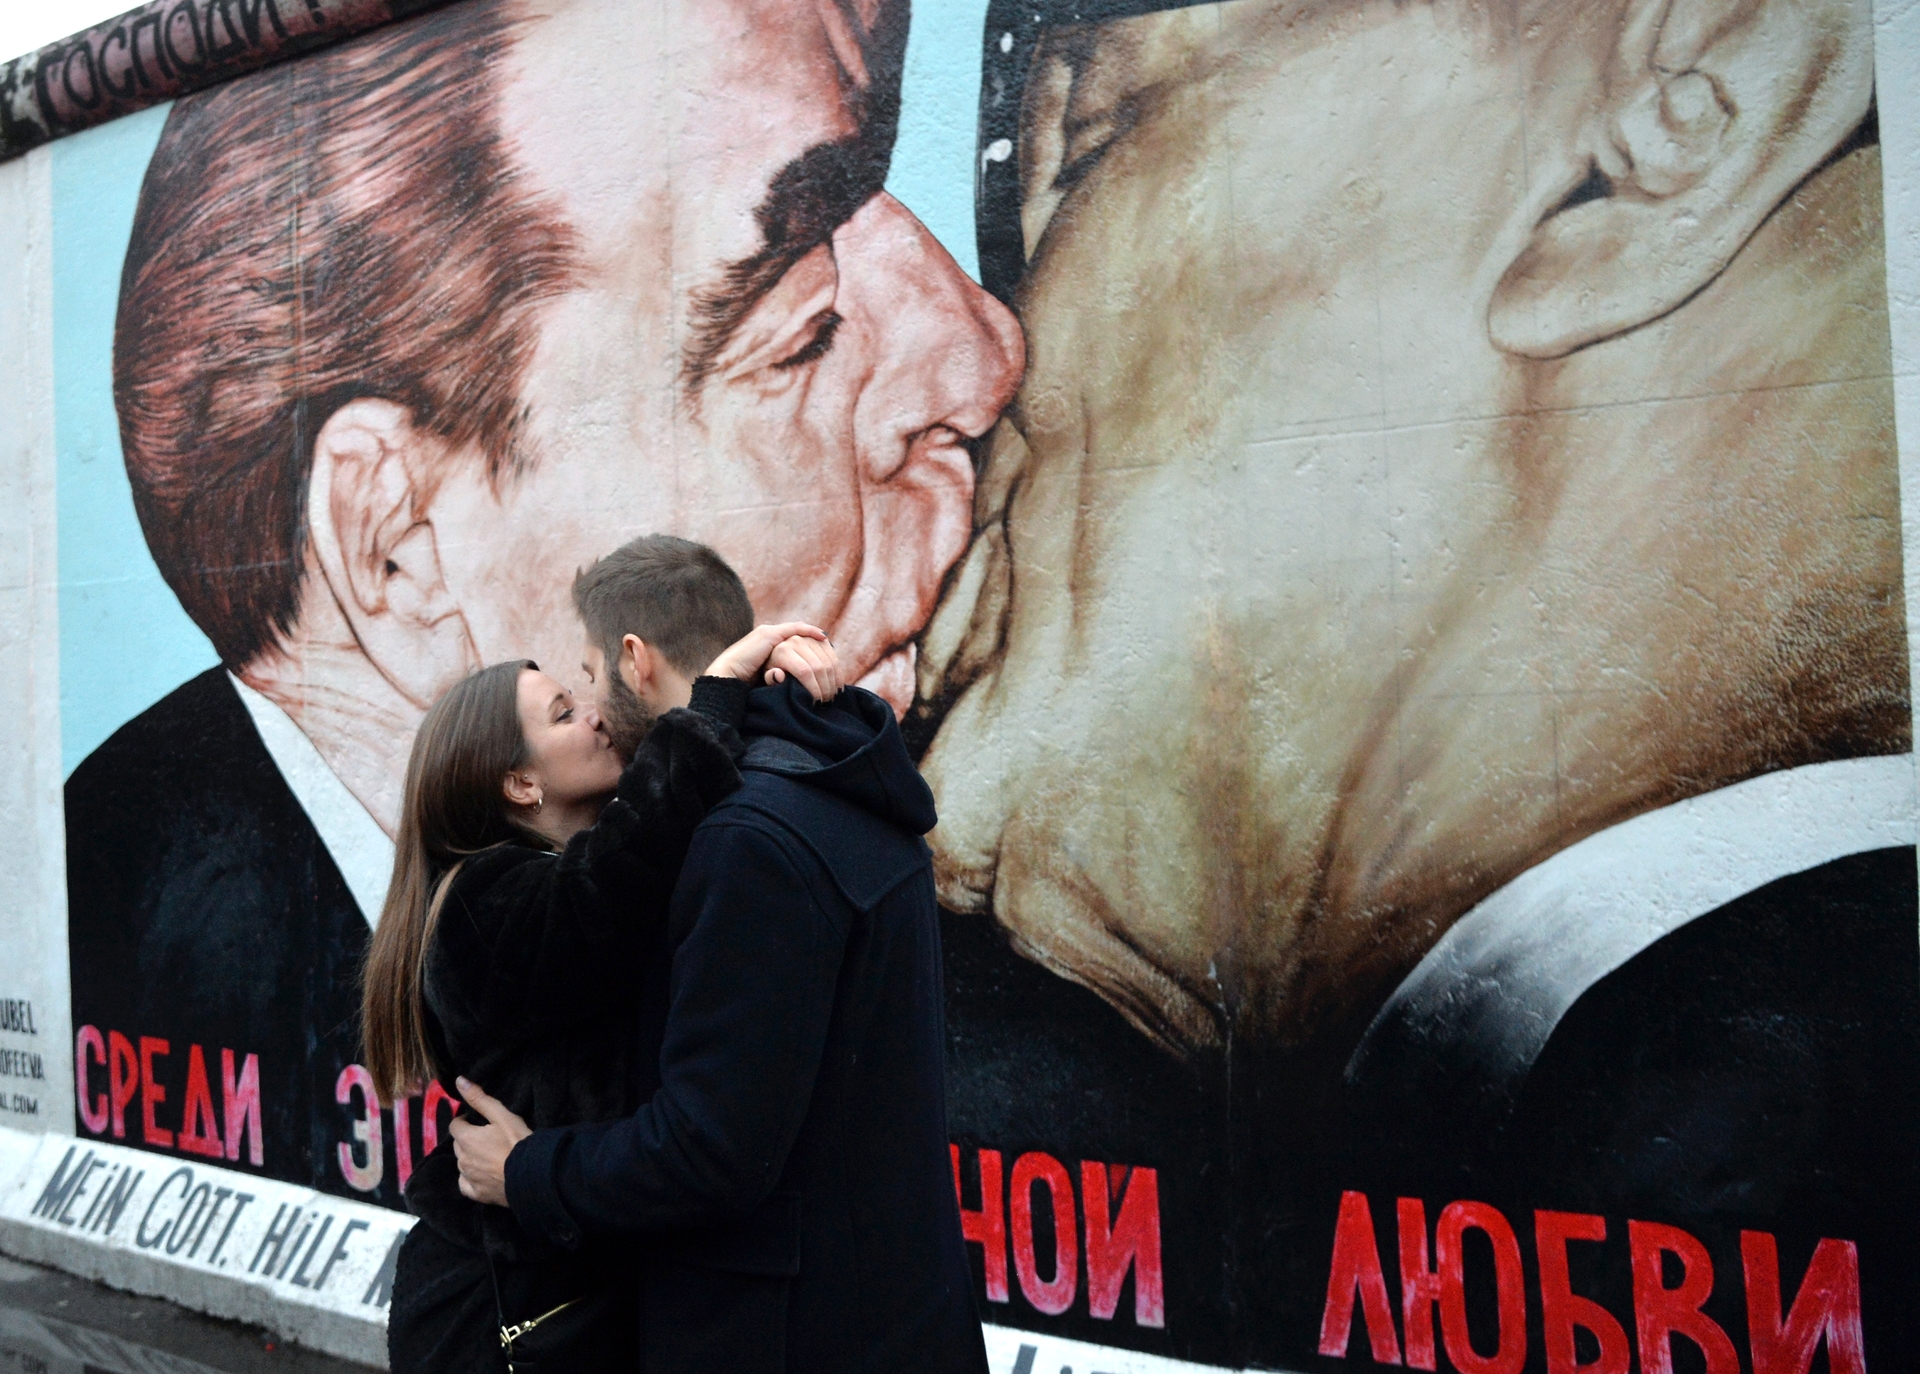 Господи помоги выжить среди этой смертной любви. Брежнев поцелуй Берлинская стена. Братский поцелуй Брежнева. Поцелуй Брежнева и Хонеккера на Берлинской стене.